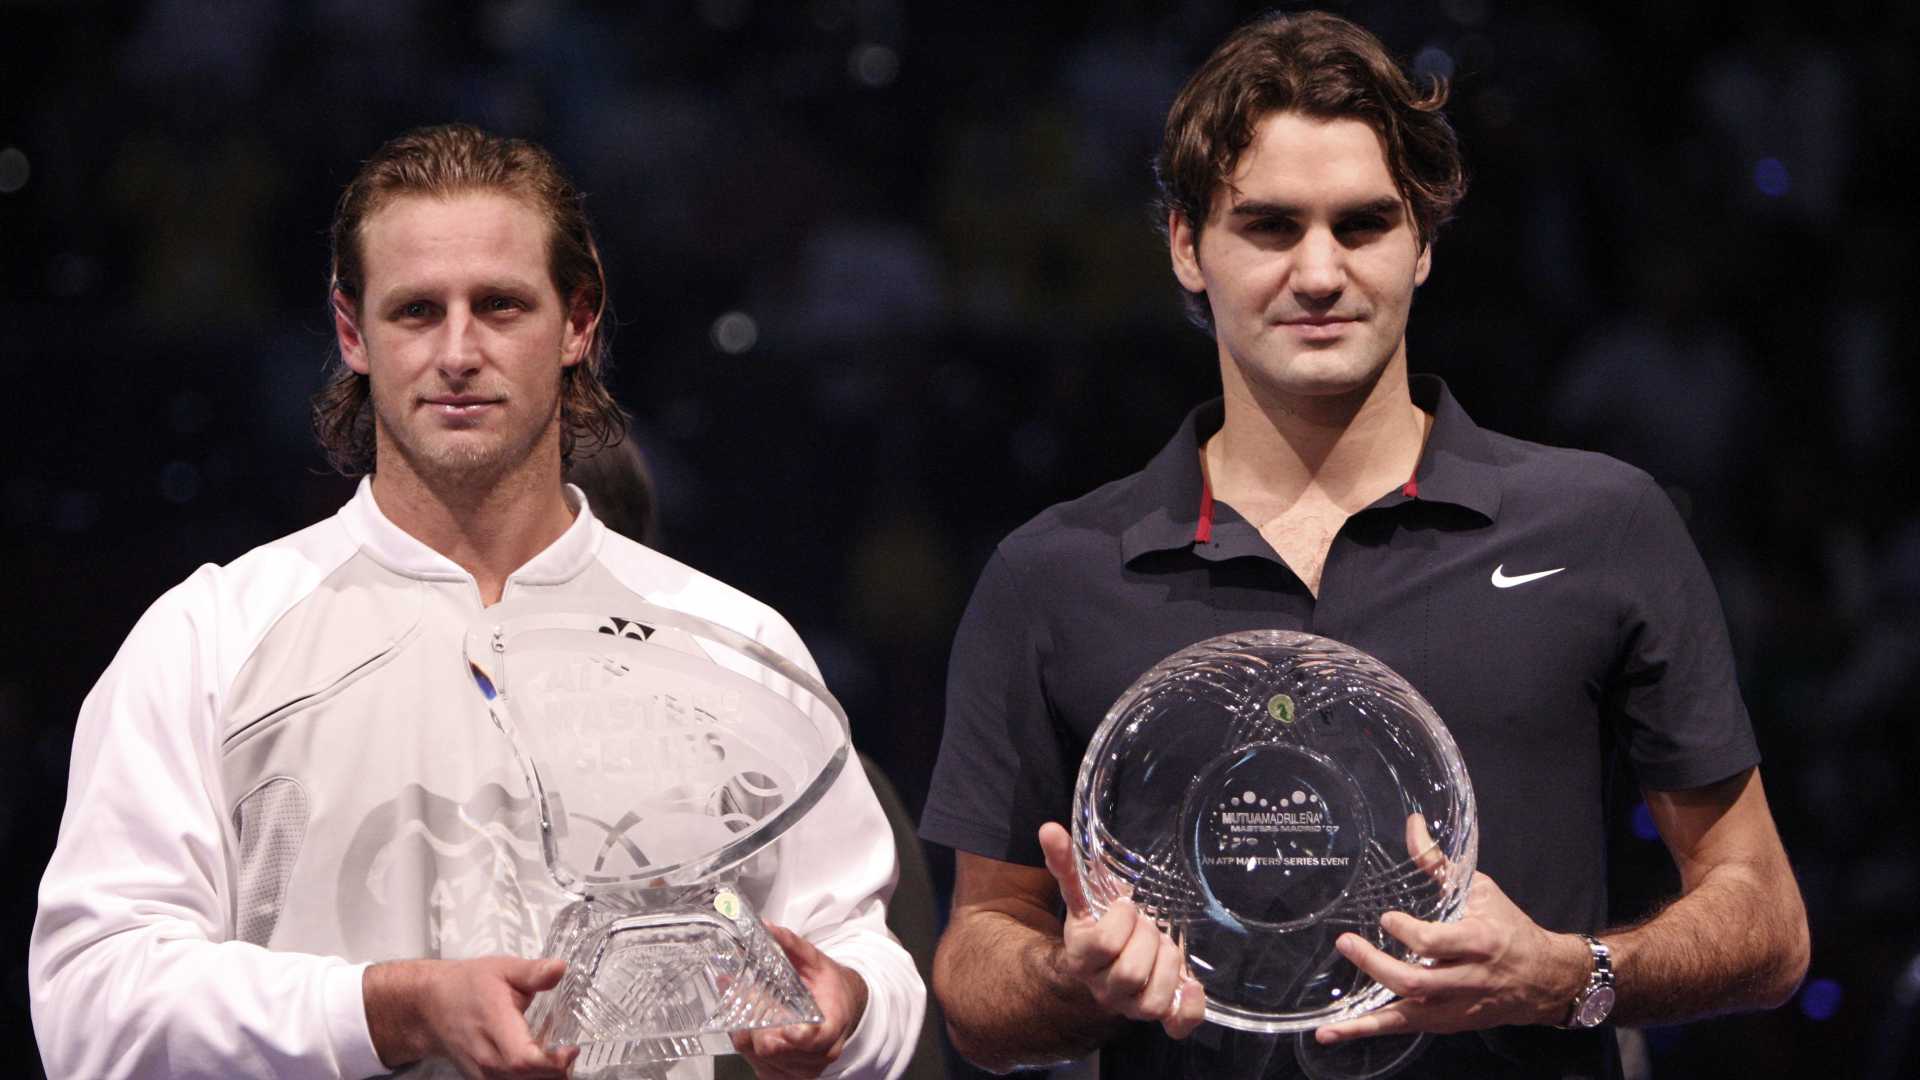 David Nalbandian and Roger Federer